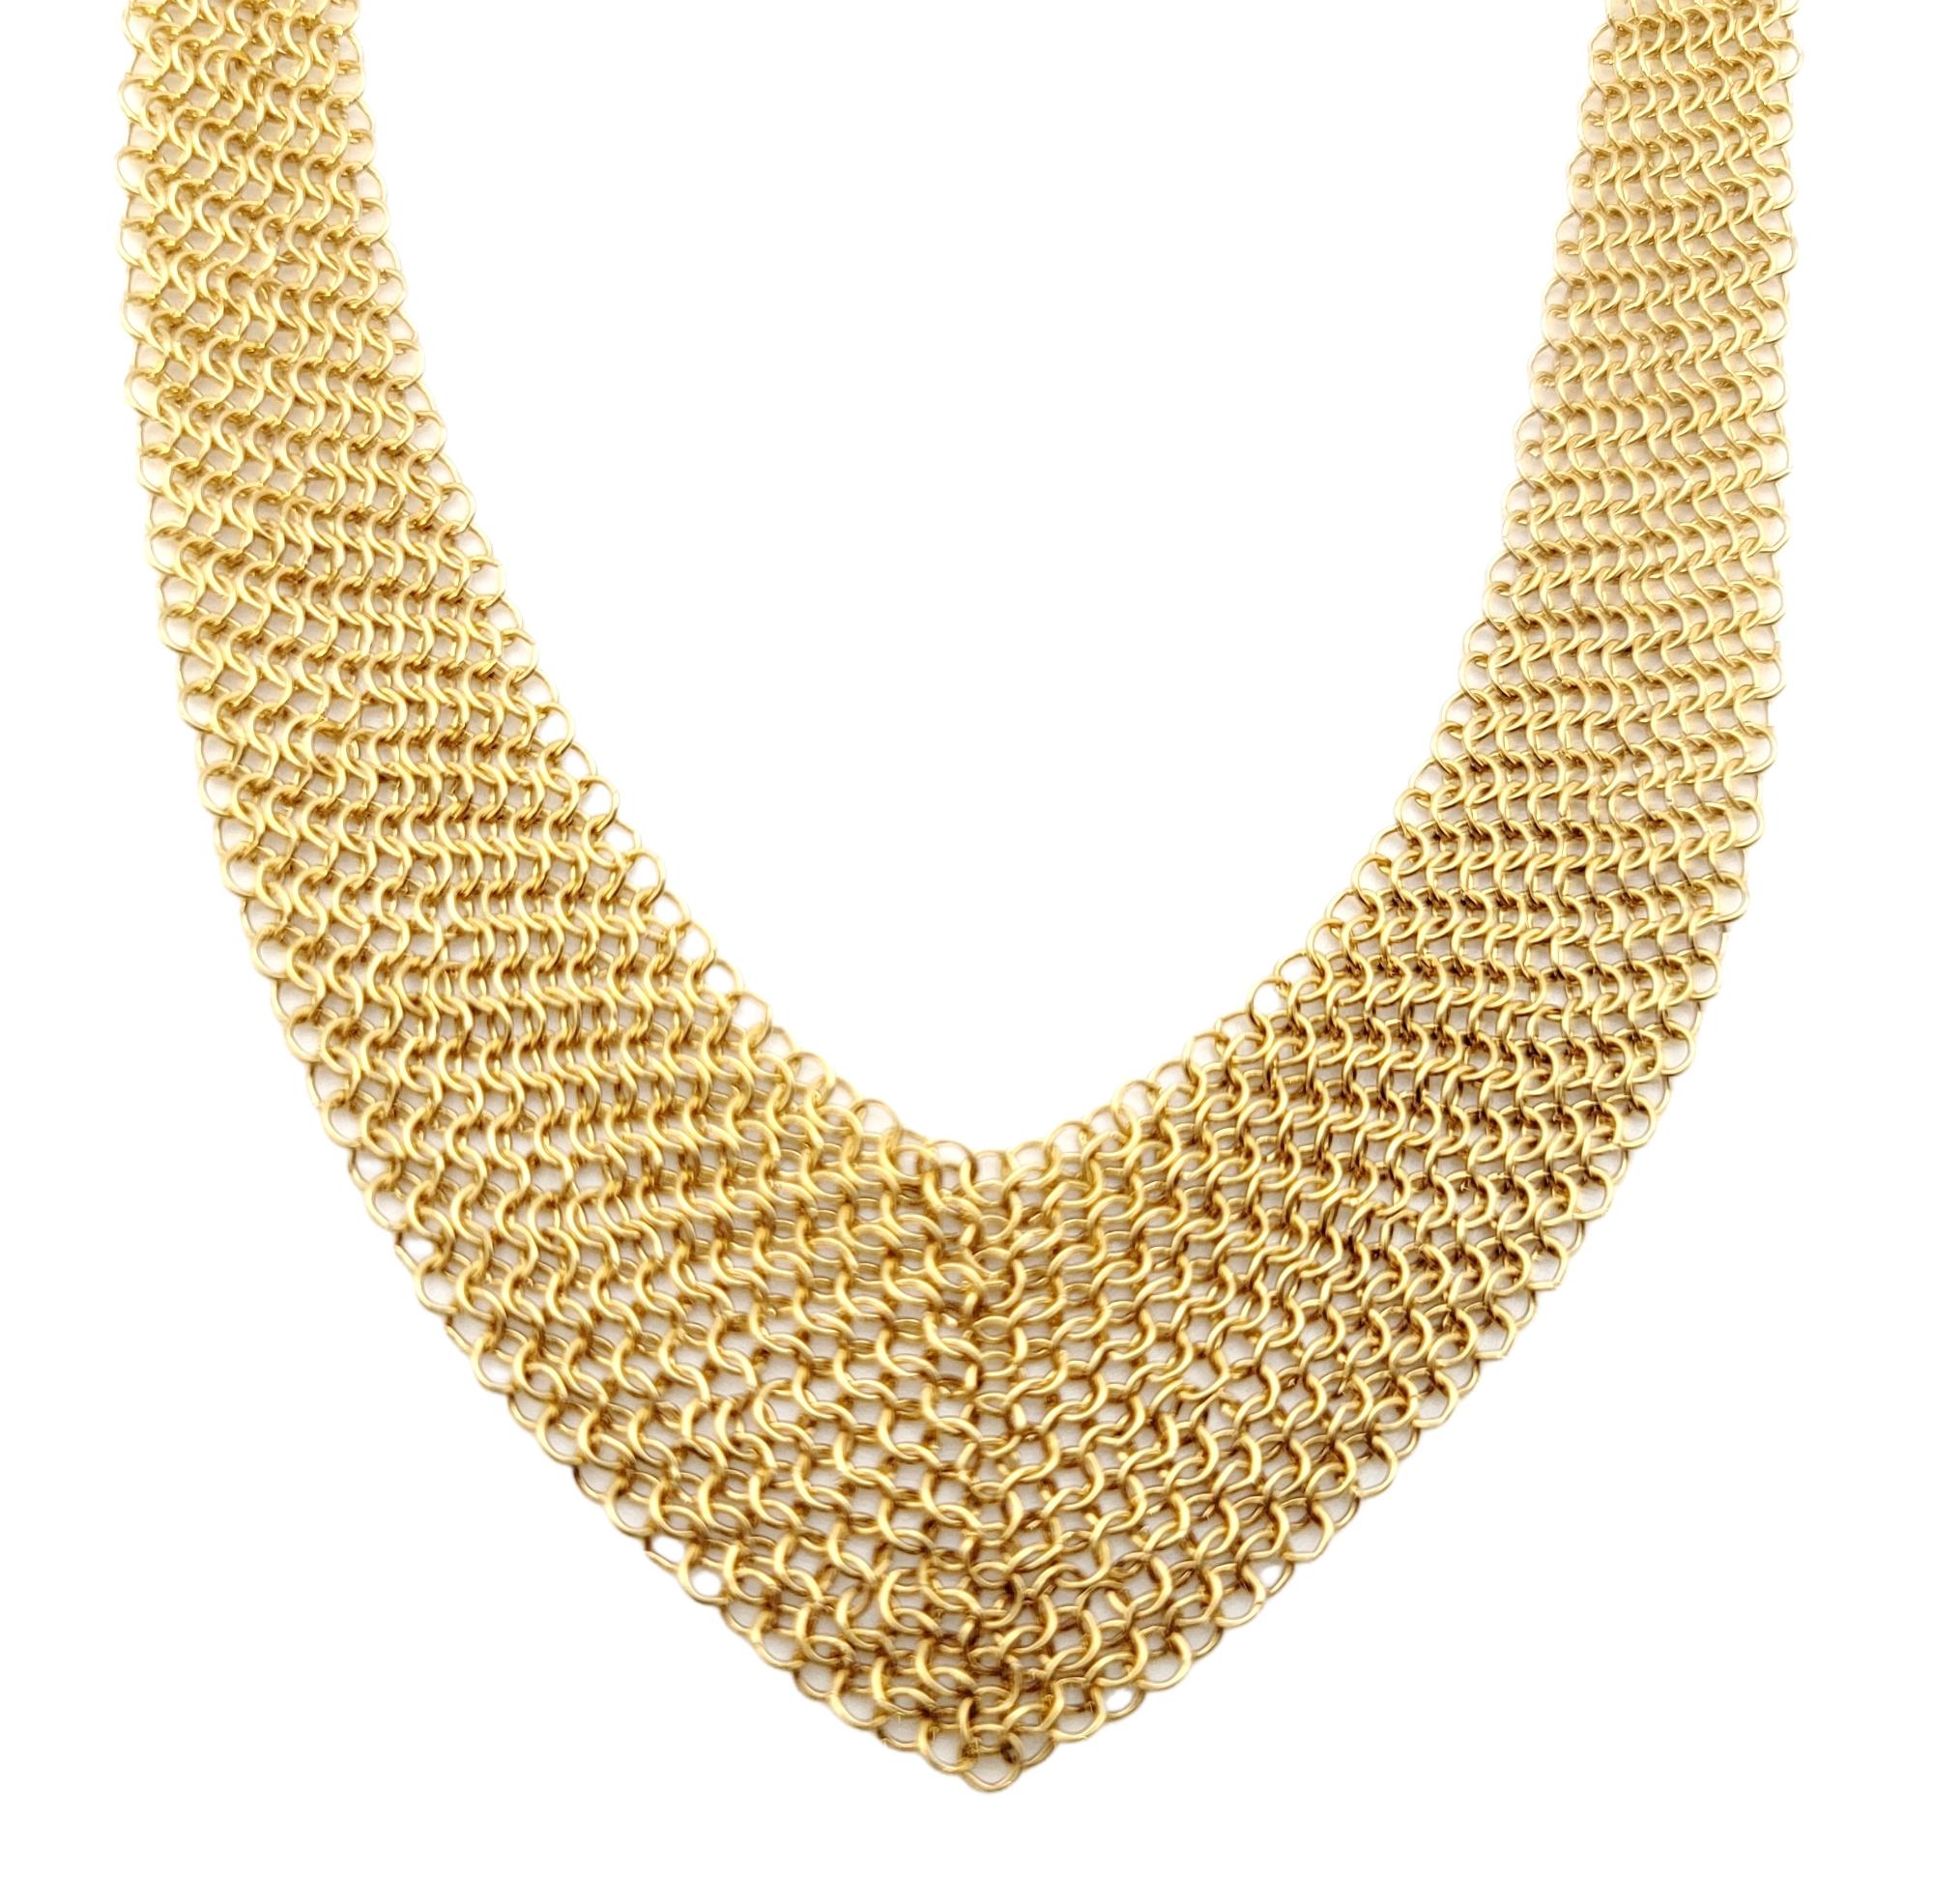 Superbe collier à mailles en or jaune 18 carats, créé par Elsa Peretti pour Tiffany & Co. Bien que délicate dans sa construction, cette pièce fait une déclaration audacieuse. La forme est malléable et ergonomique dans sa façon de se draper sur les